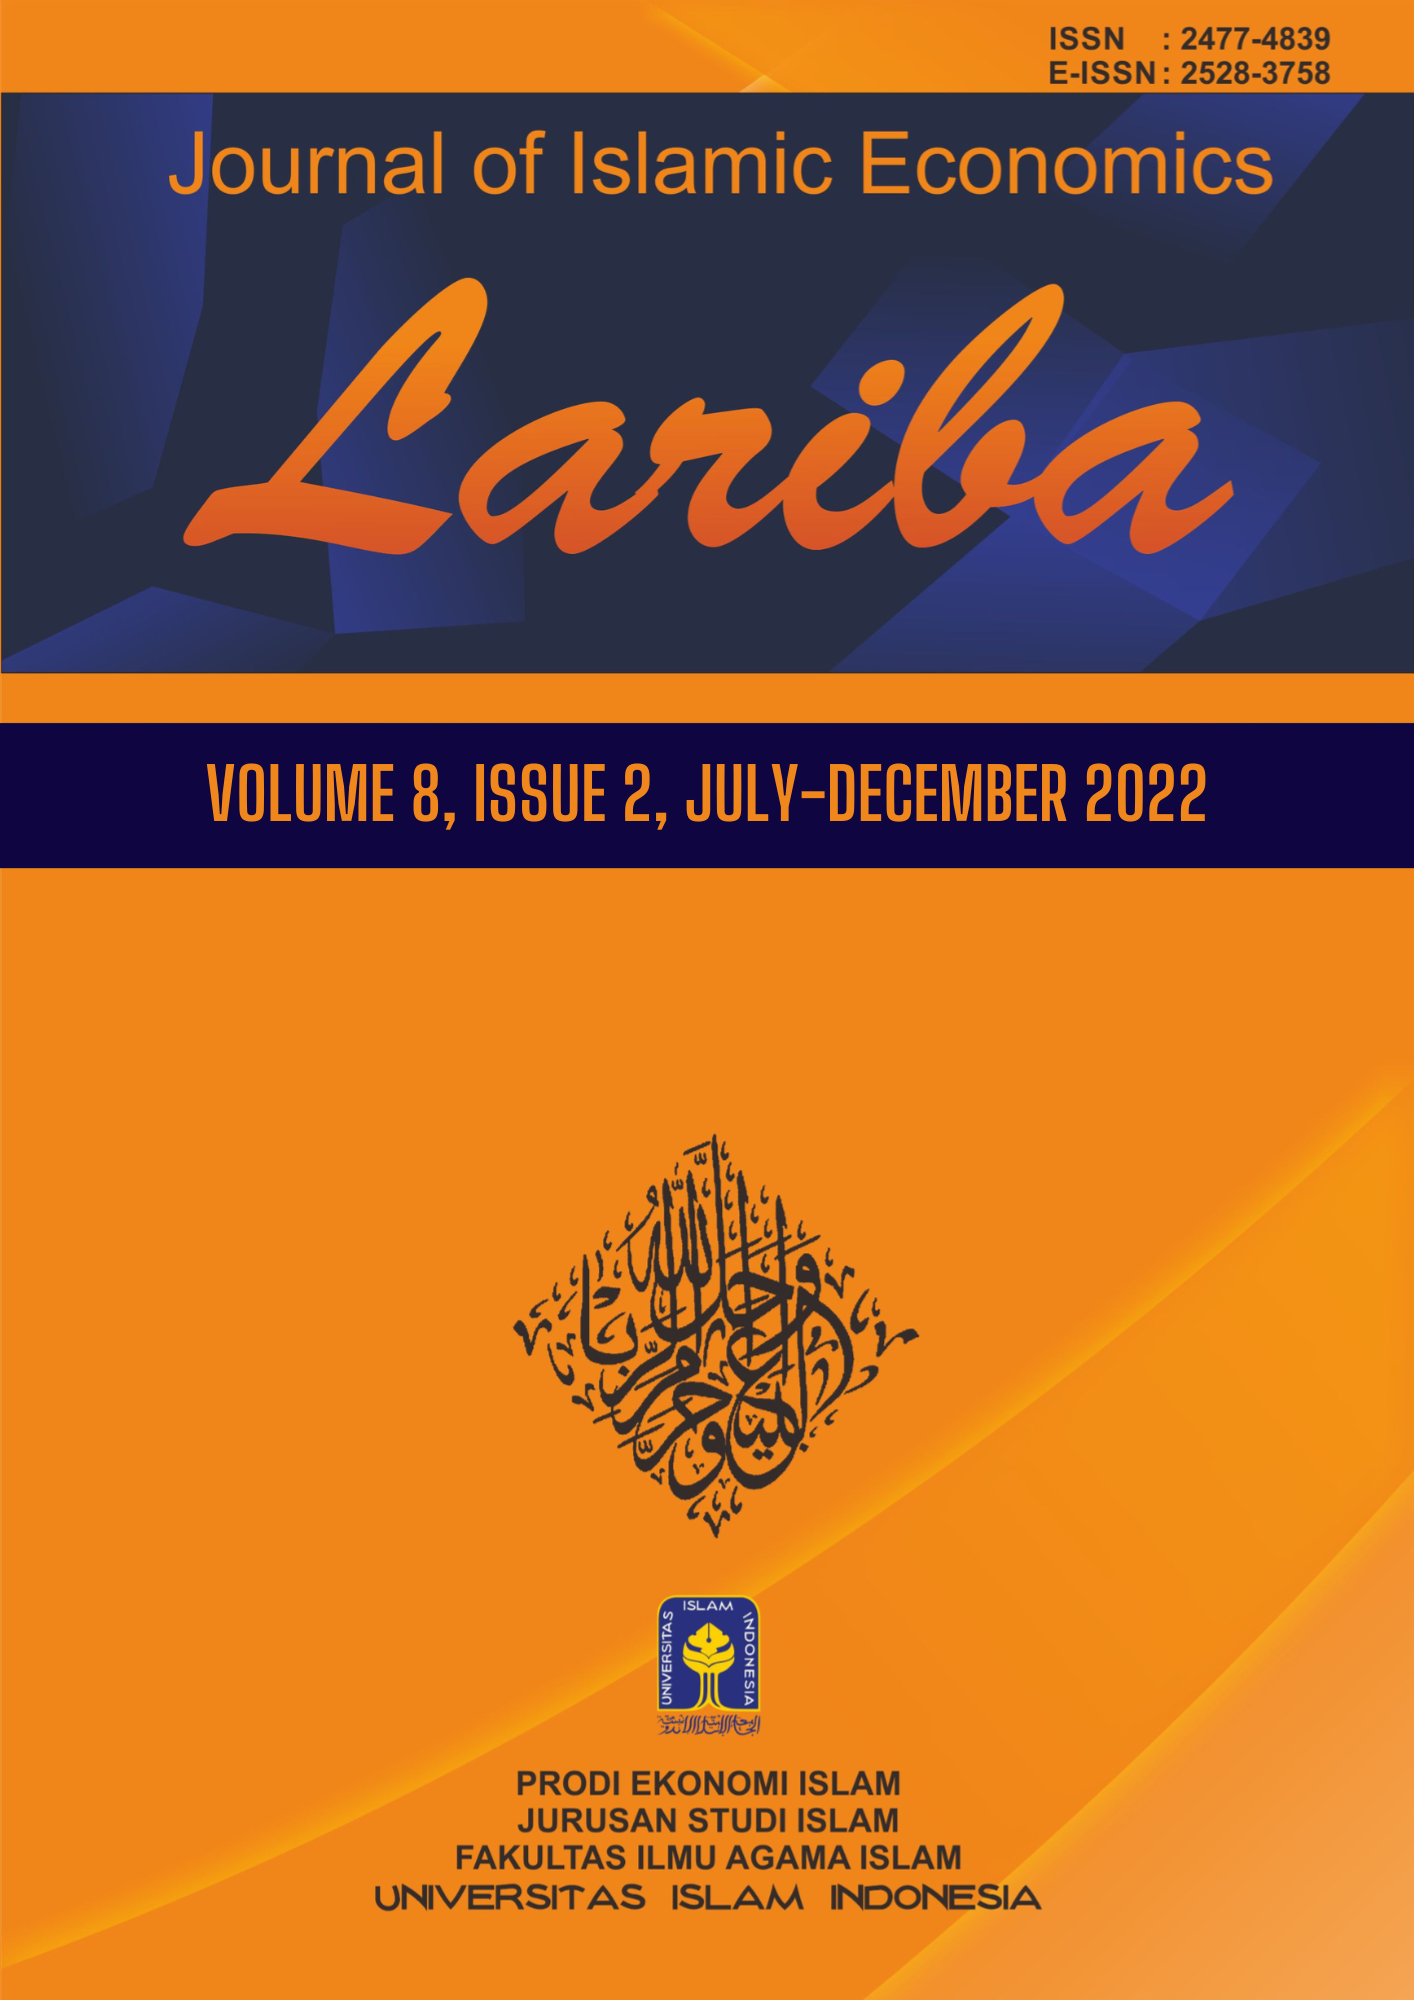 Cover JIELariba Volume 8, Issue 2, July-December 2022